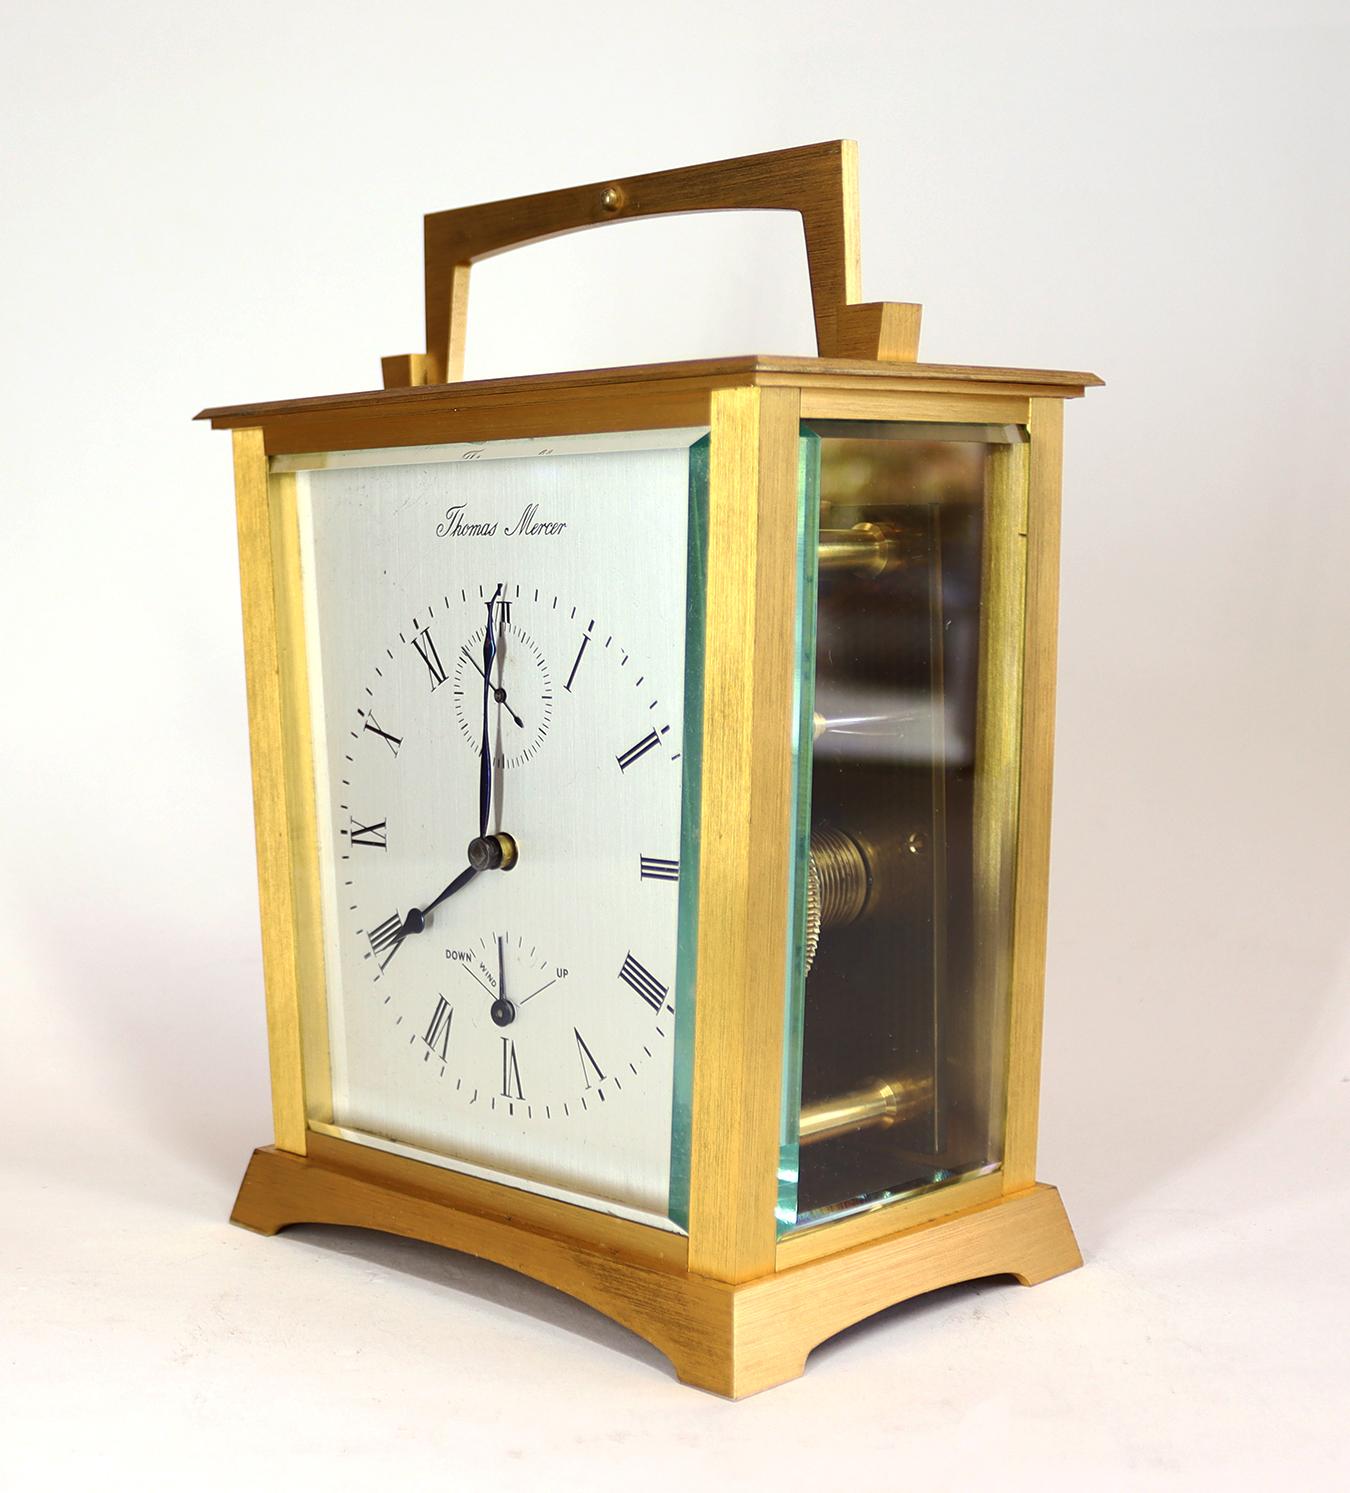 Pièce d'horlogerie anglaise en laiton doré avec chronomètre, coffret de voyage d'origine, clé et acte de vente. Le boîtier fuselé et grainé est doté d'une poignée rabattable, d'un panneau en verre biseauté sur le dessus, de panneaux en verre